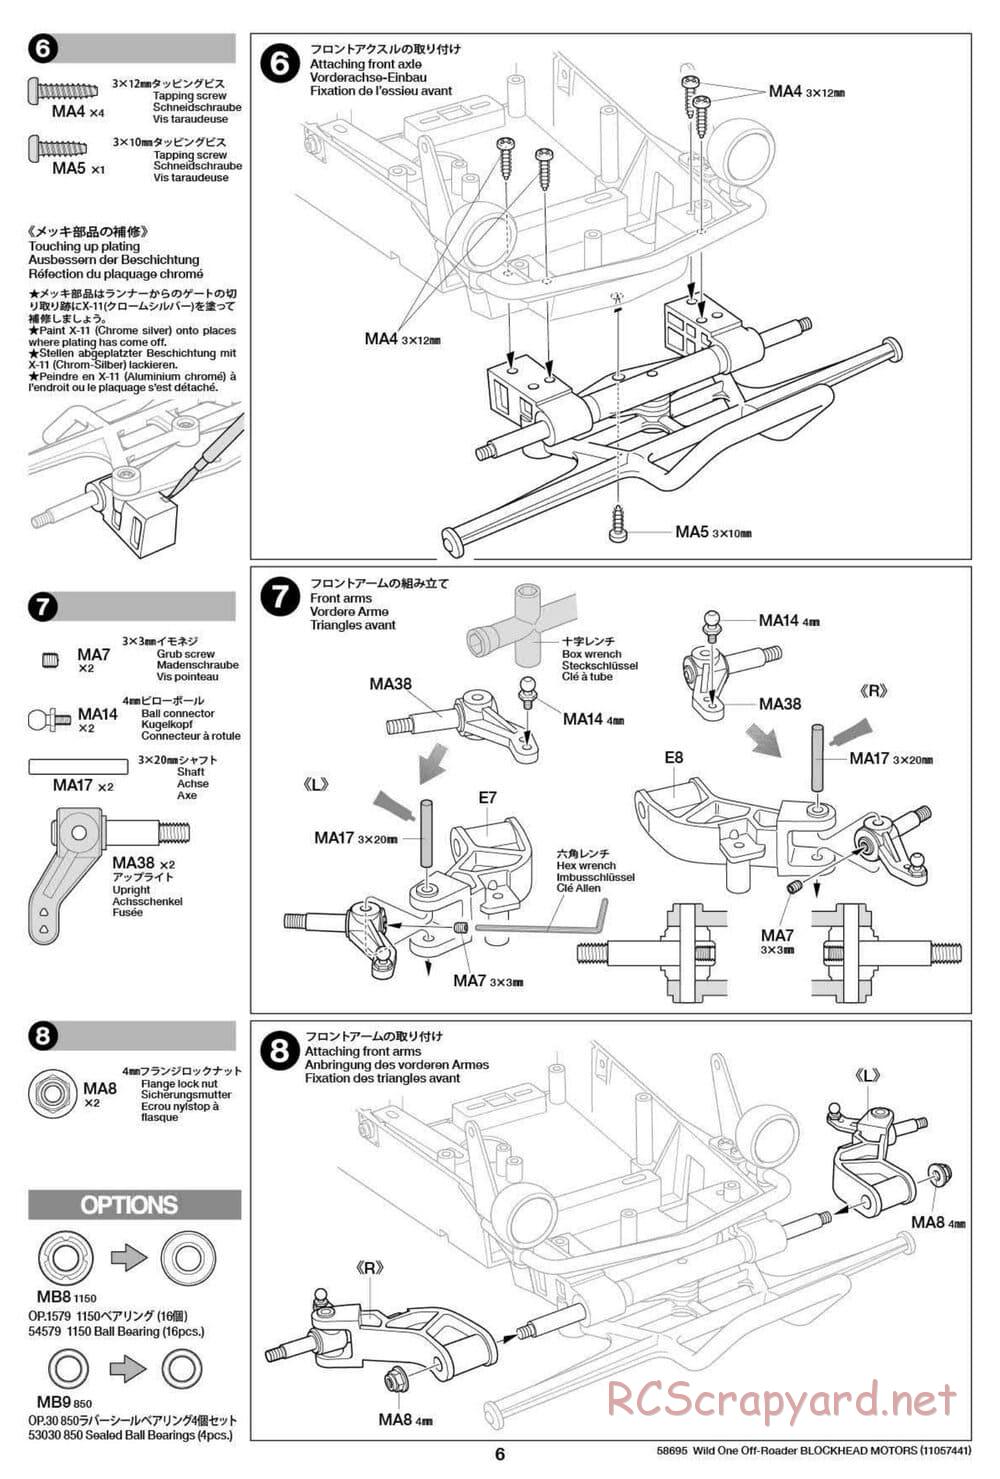 Tamiya - Wild One Off Roader Blockhead Motors - FAV Chassis - Manual - Page 6